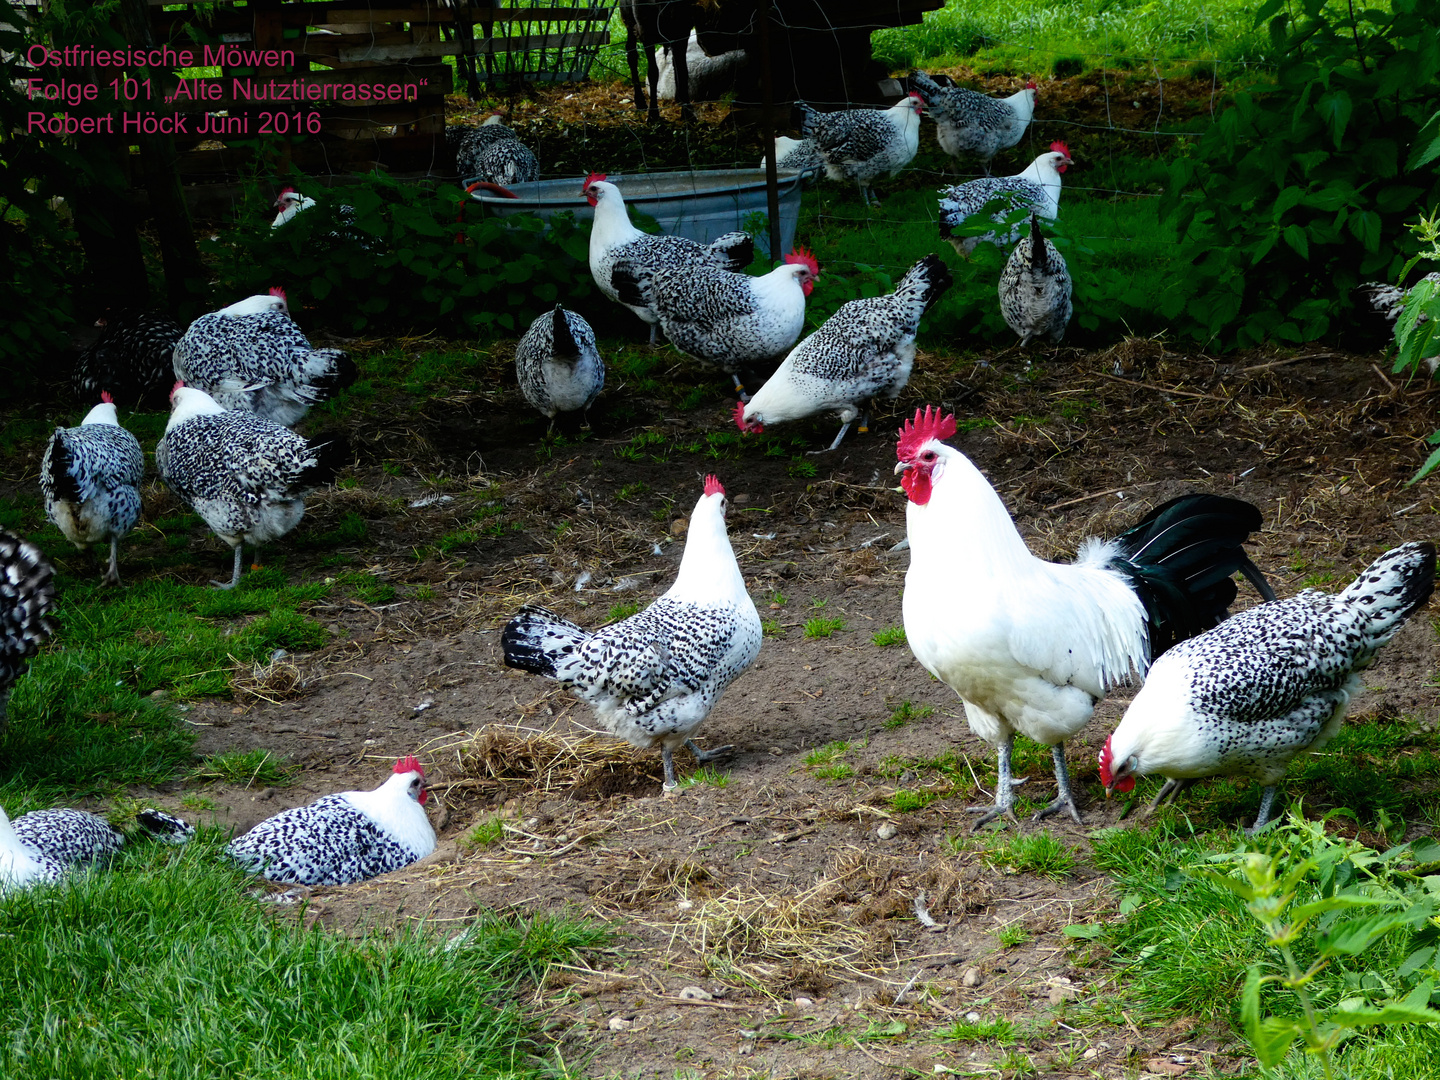 Silbermöwen bzw. Ostfriesische Möwen Hühner in Norddeutschland - East Frisian Gull chickens